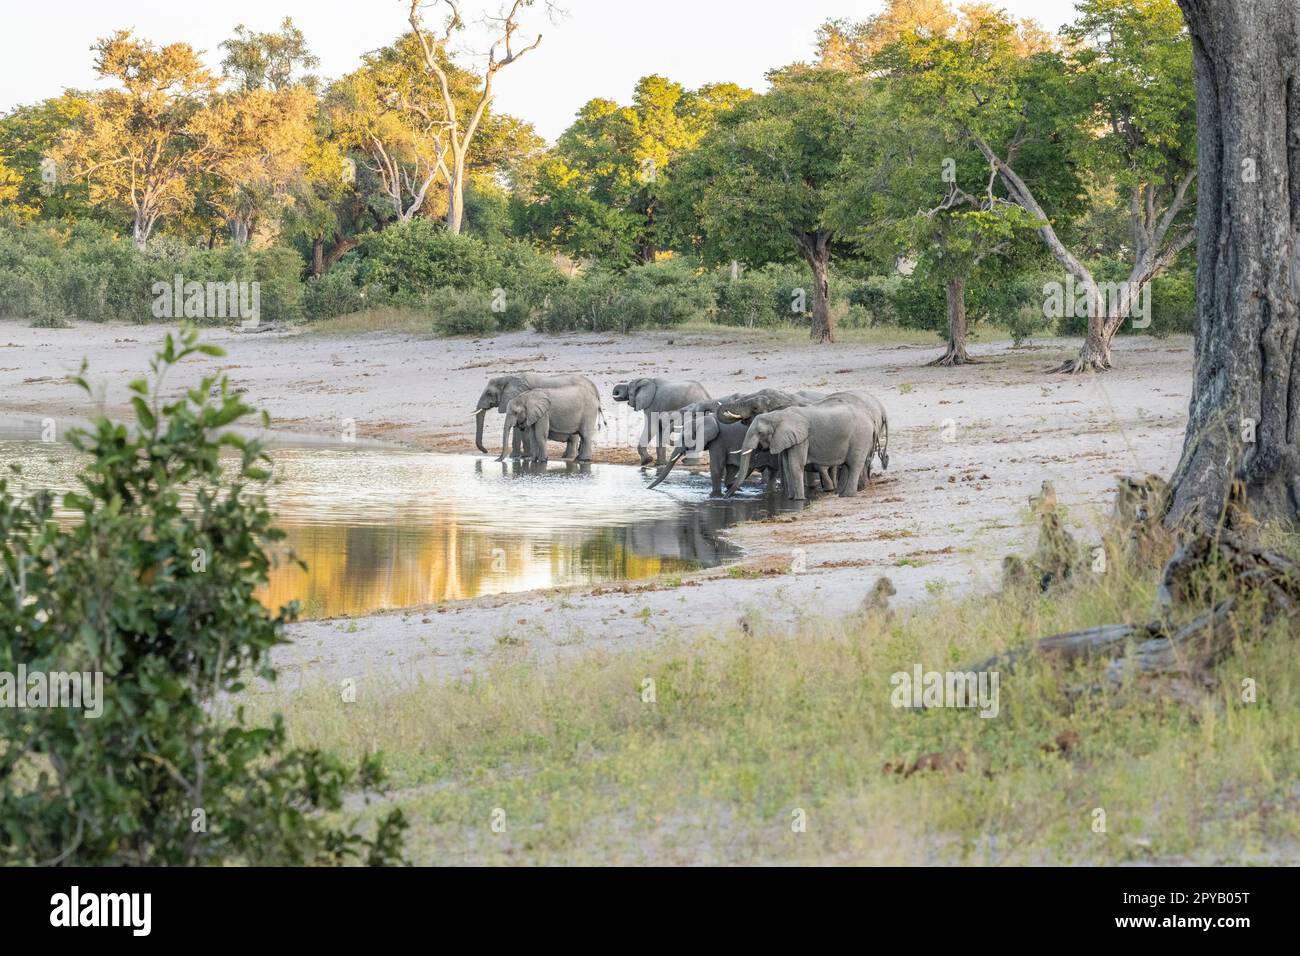 Éléphants, troupeau (Loxodonta Africana), marchant jusqu'au bord de la rivière en buvant dans les eaux peu profondes. Famille des éléphants d'Afrique. Bande de Caprivi, Namibie, Afrique Banque D'Images